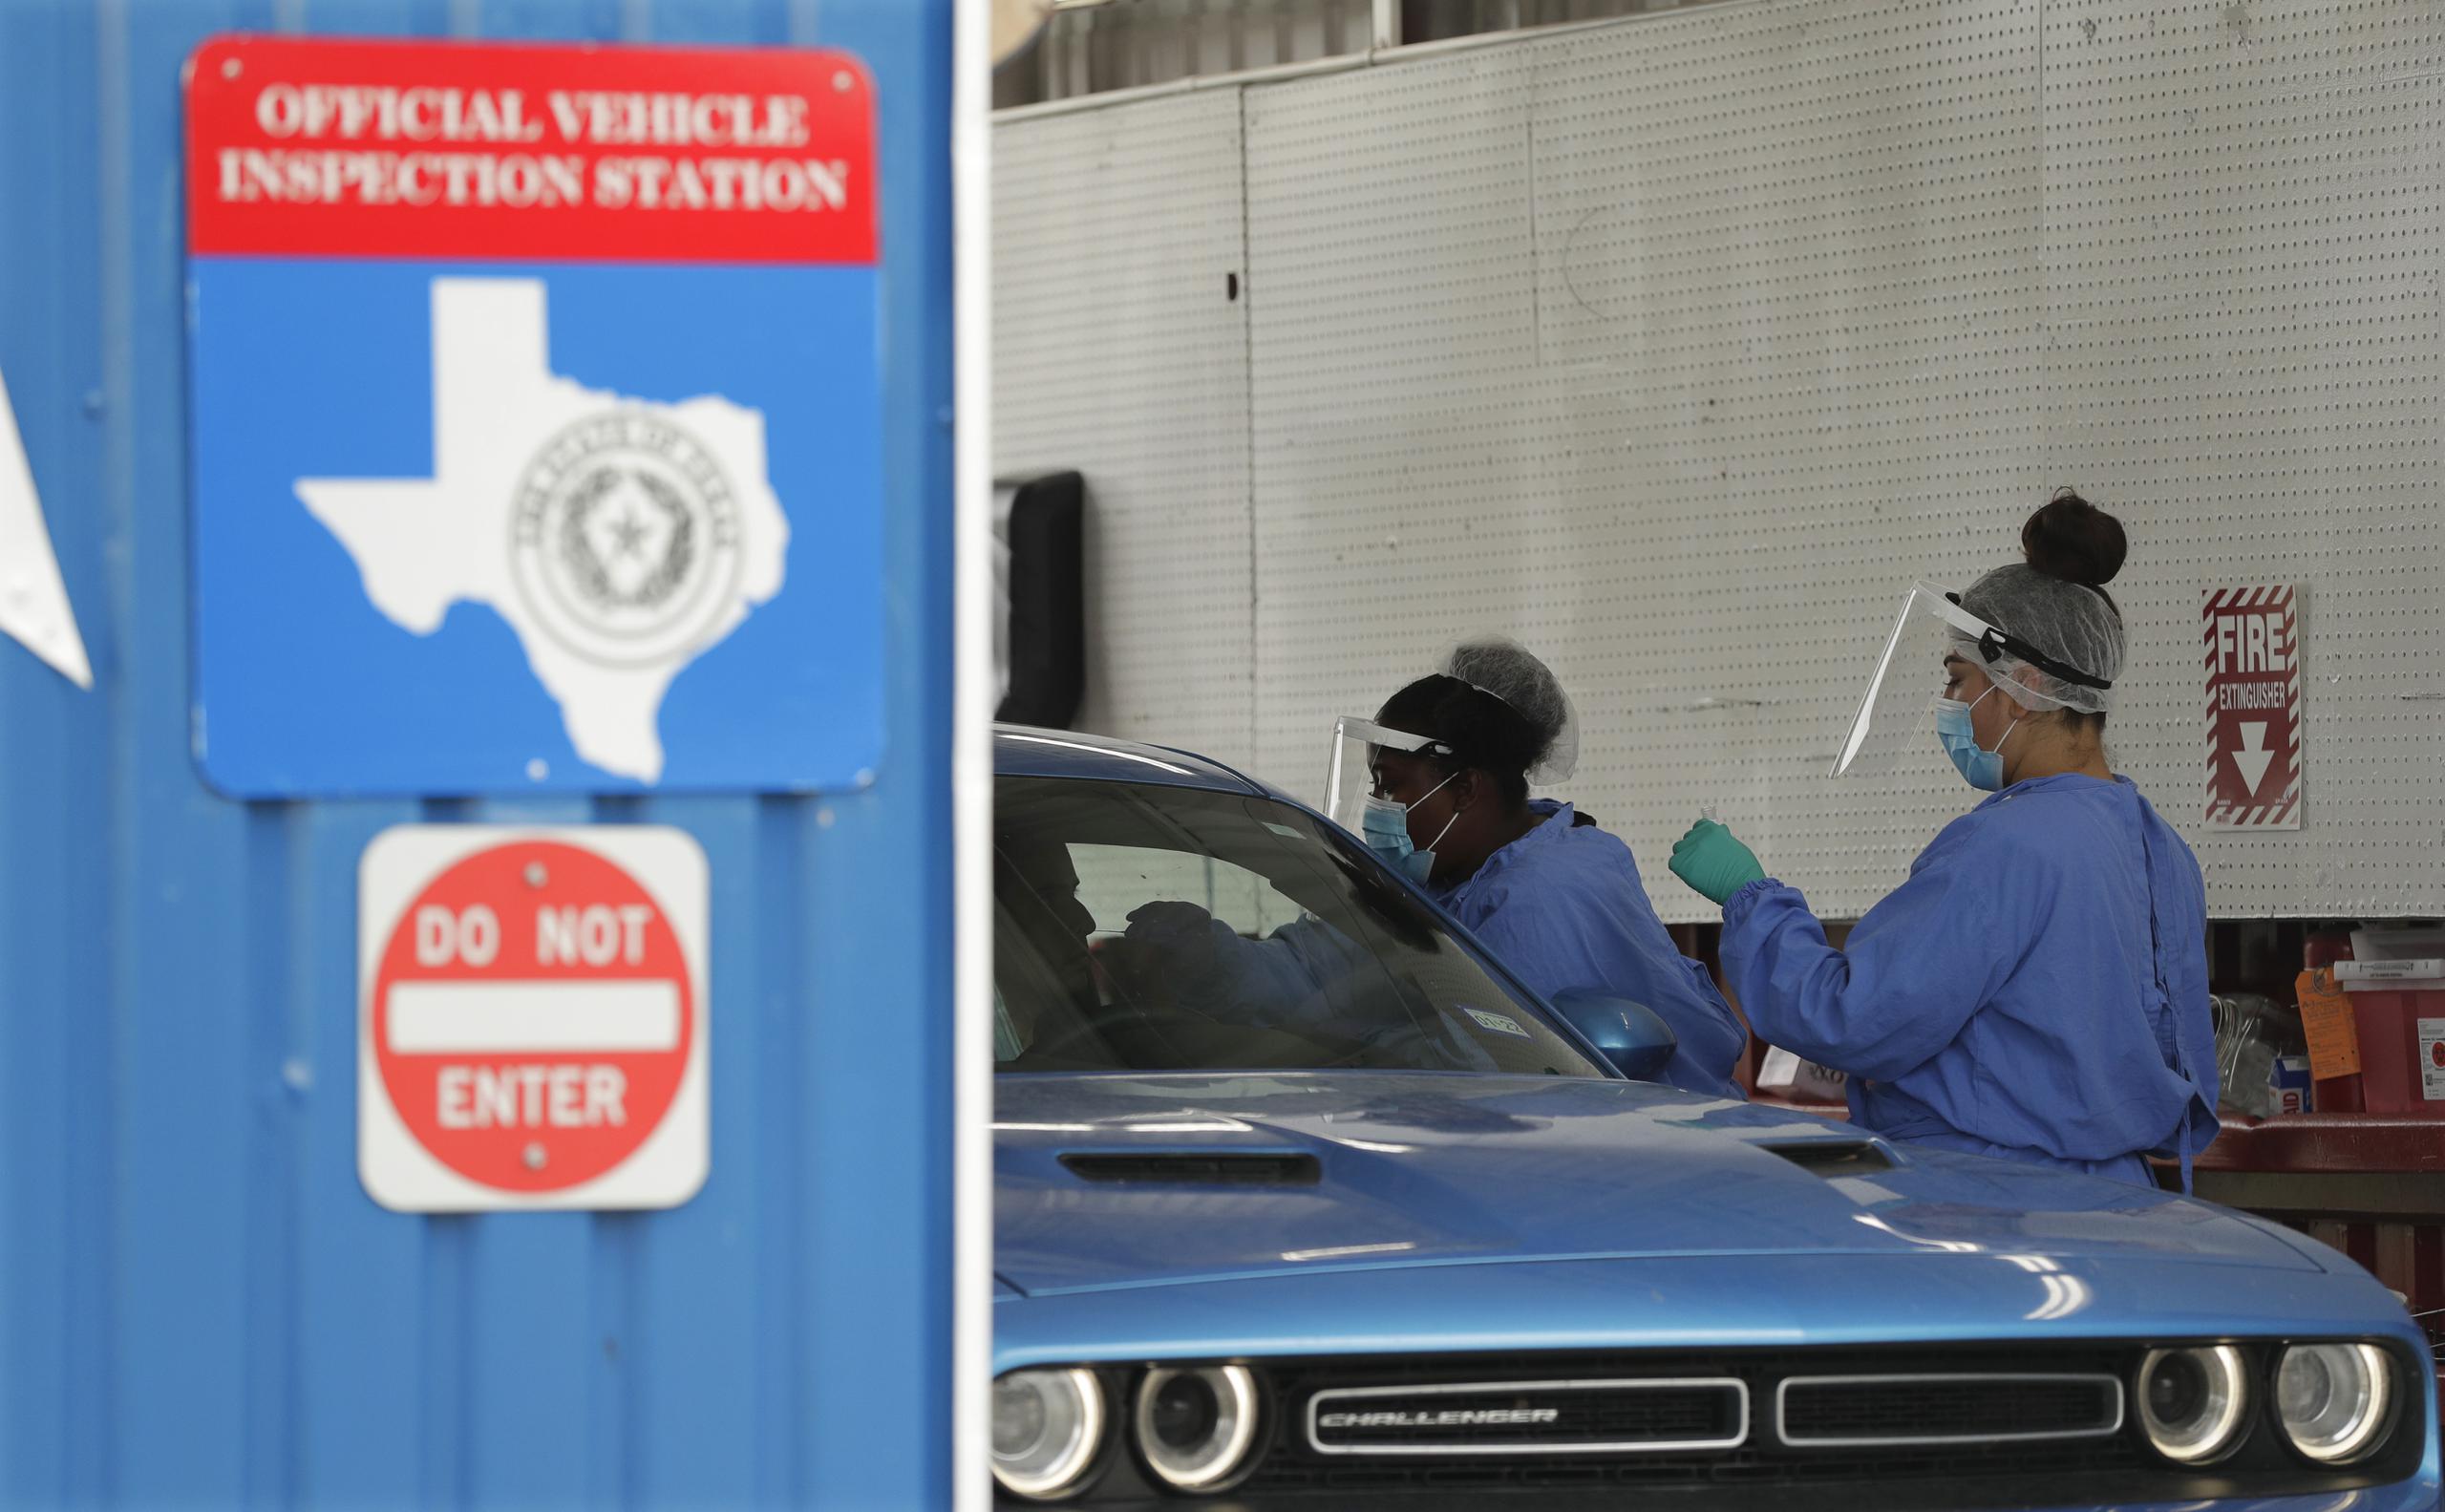 Unas personas administran pruebas de covid-19 en un centro de inspección, en San Antonio, Texas